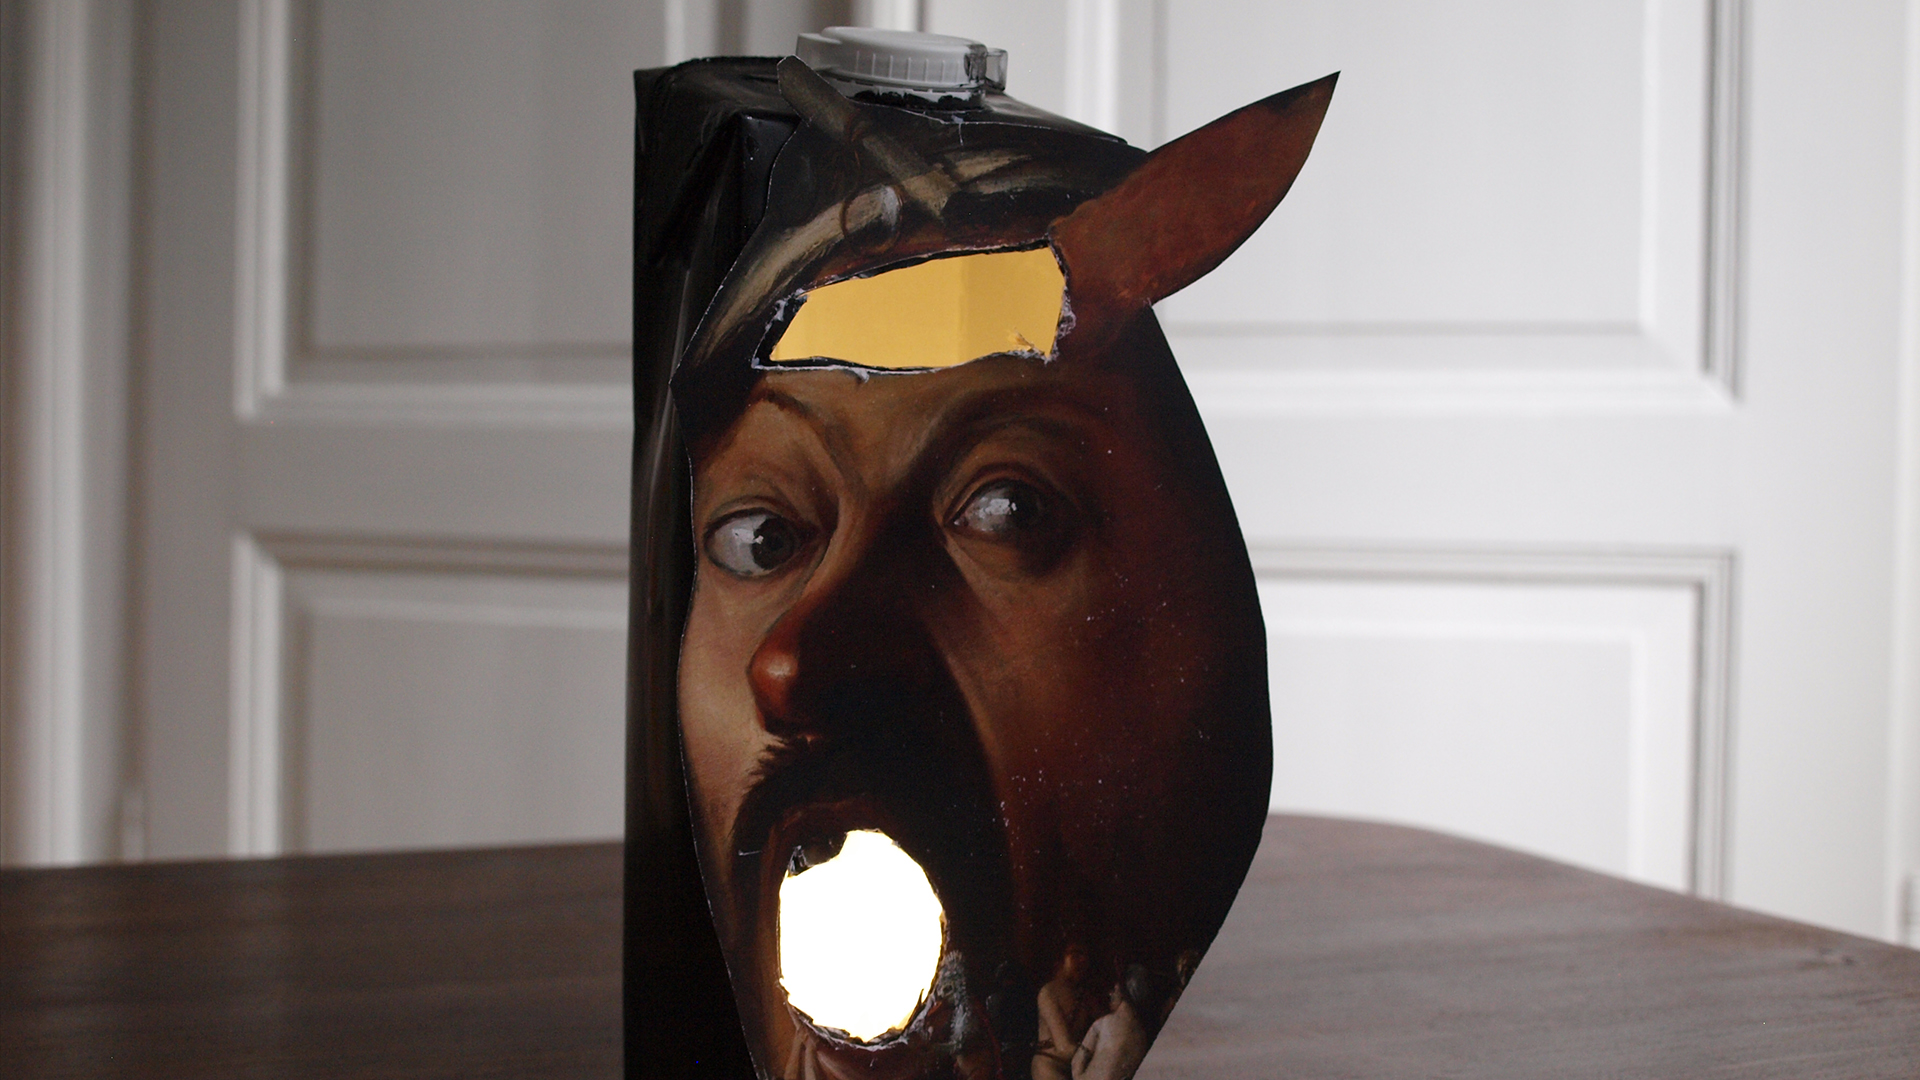 Das fertige Tetrapack-Spuklicht. Es zeigt den Kopf eines Mannes mit einer Lichtöffnung für das Teelicht.